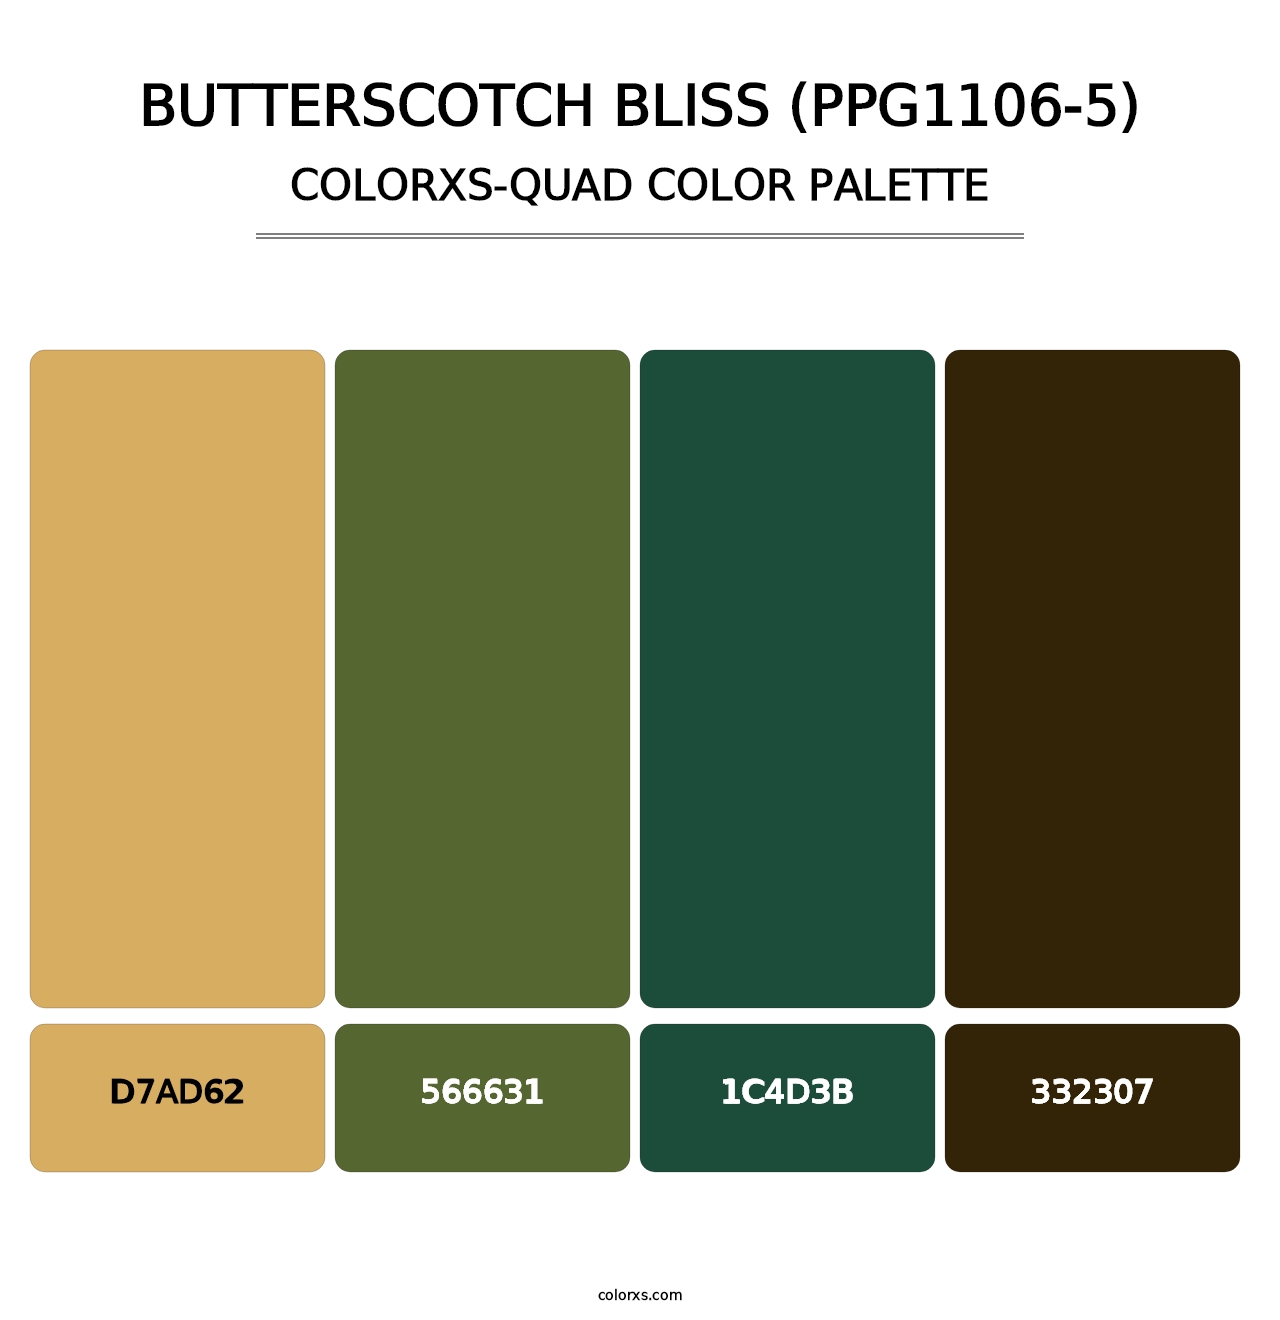 Butterscotch Bliss (PPG1106-5) - Colorxs Quad Palette